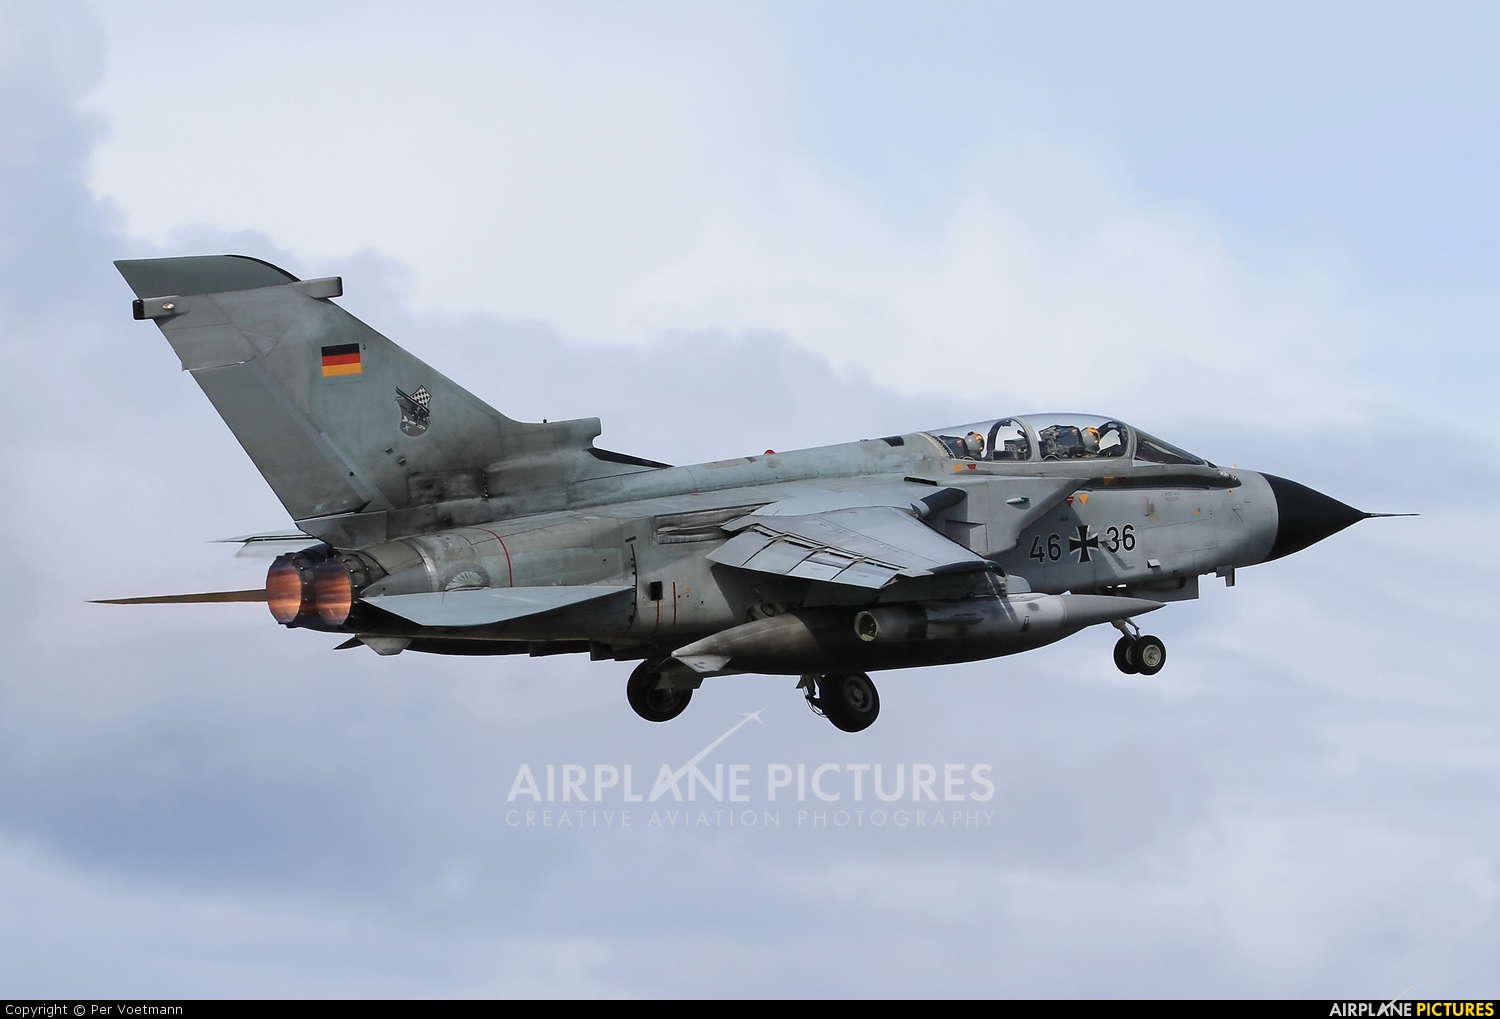 Germany - Air Force 46+36 aircraft at Orland 